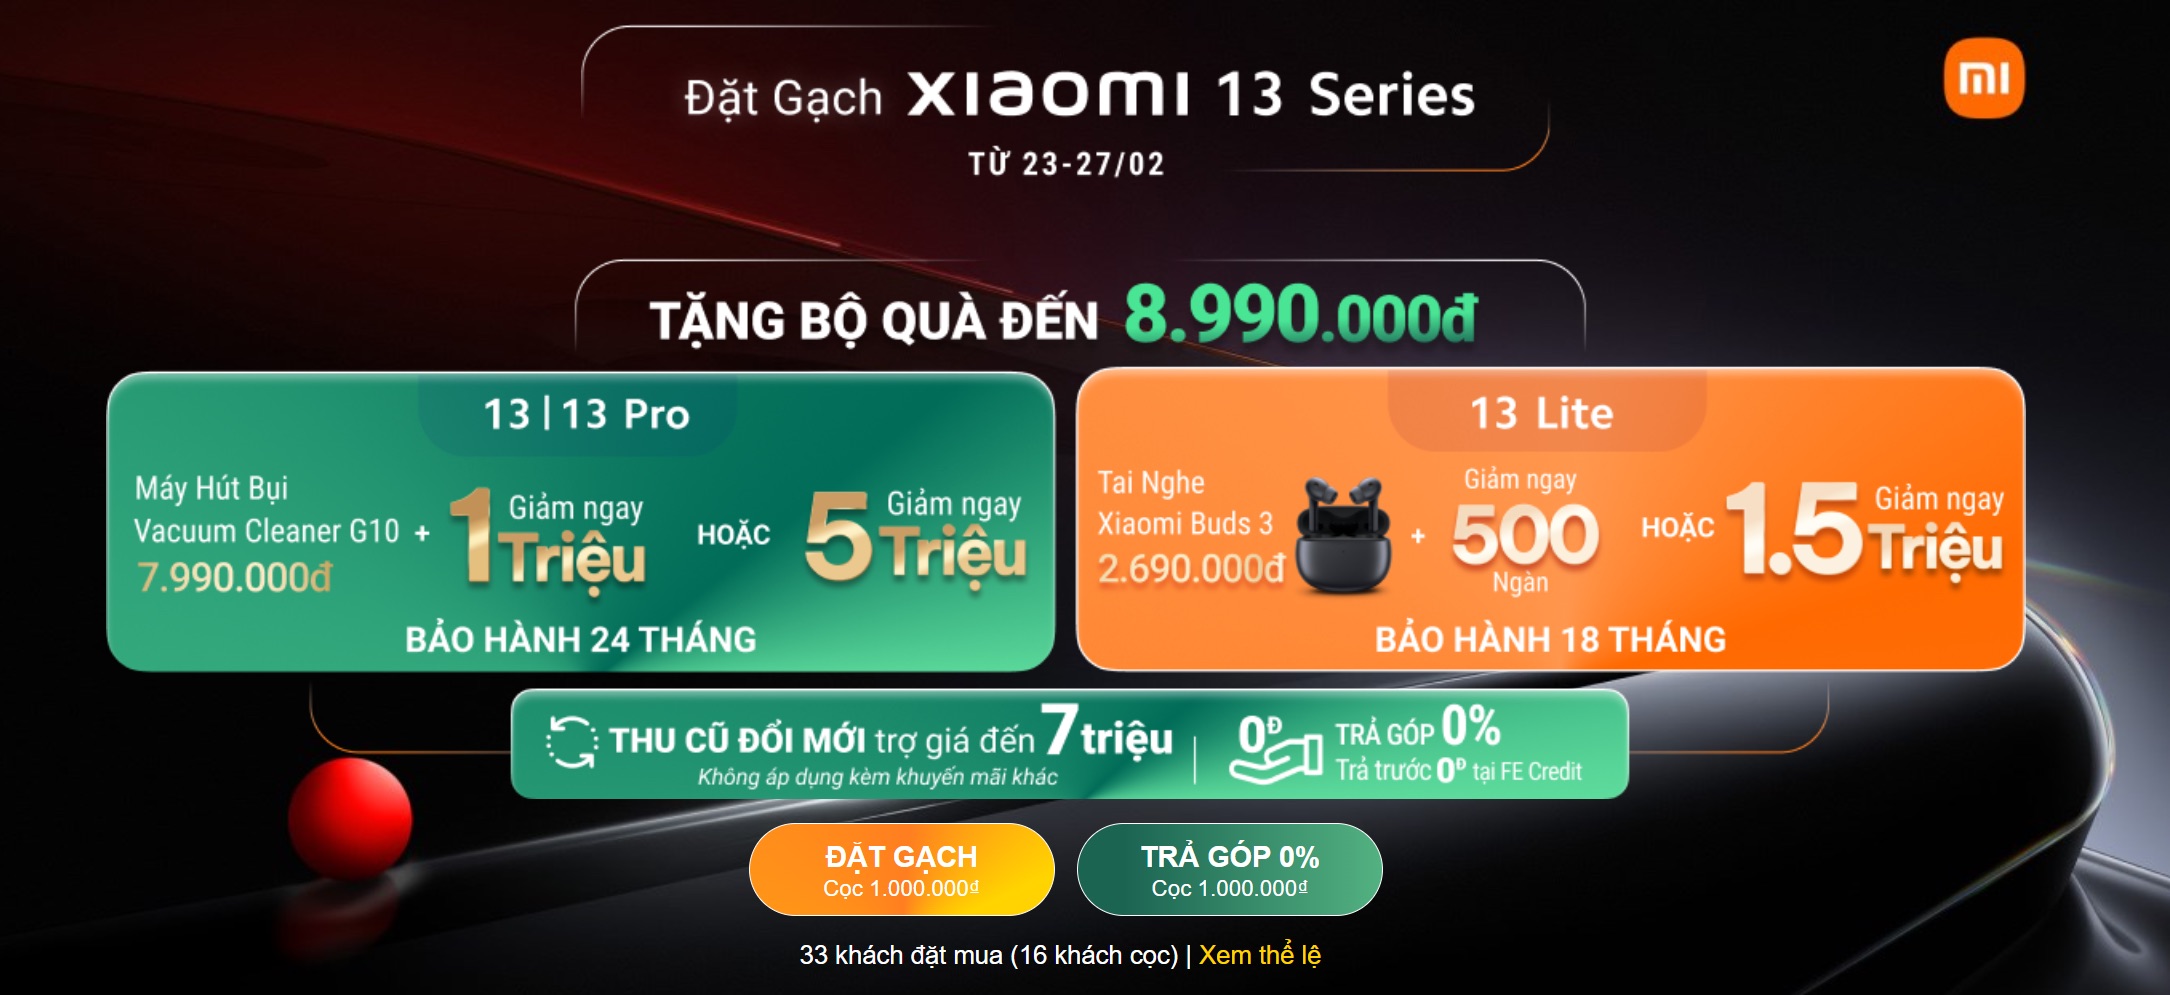 Thế Giới Di Động mở đặt trước Xiaomi 13 Series từ 22.99 triệu cùng ưu đãi đến 8.99 triệu đồng